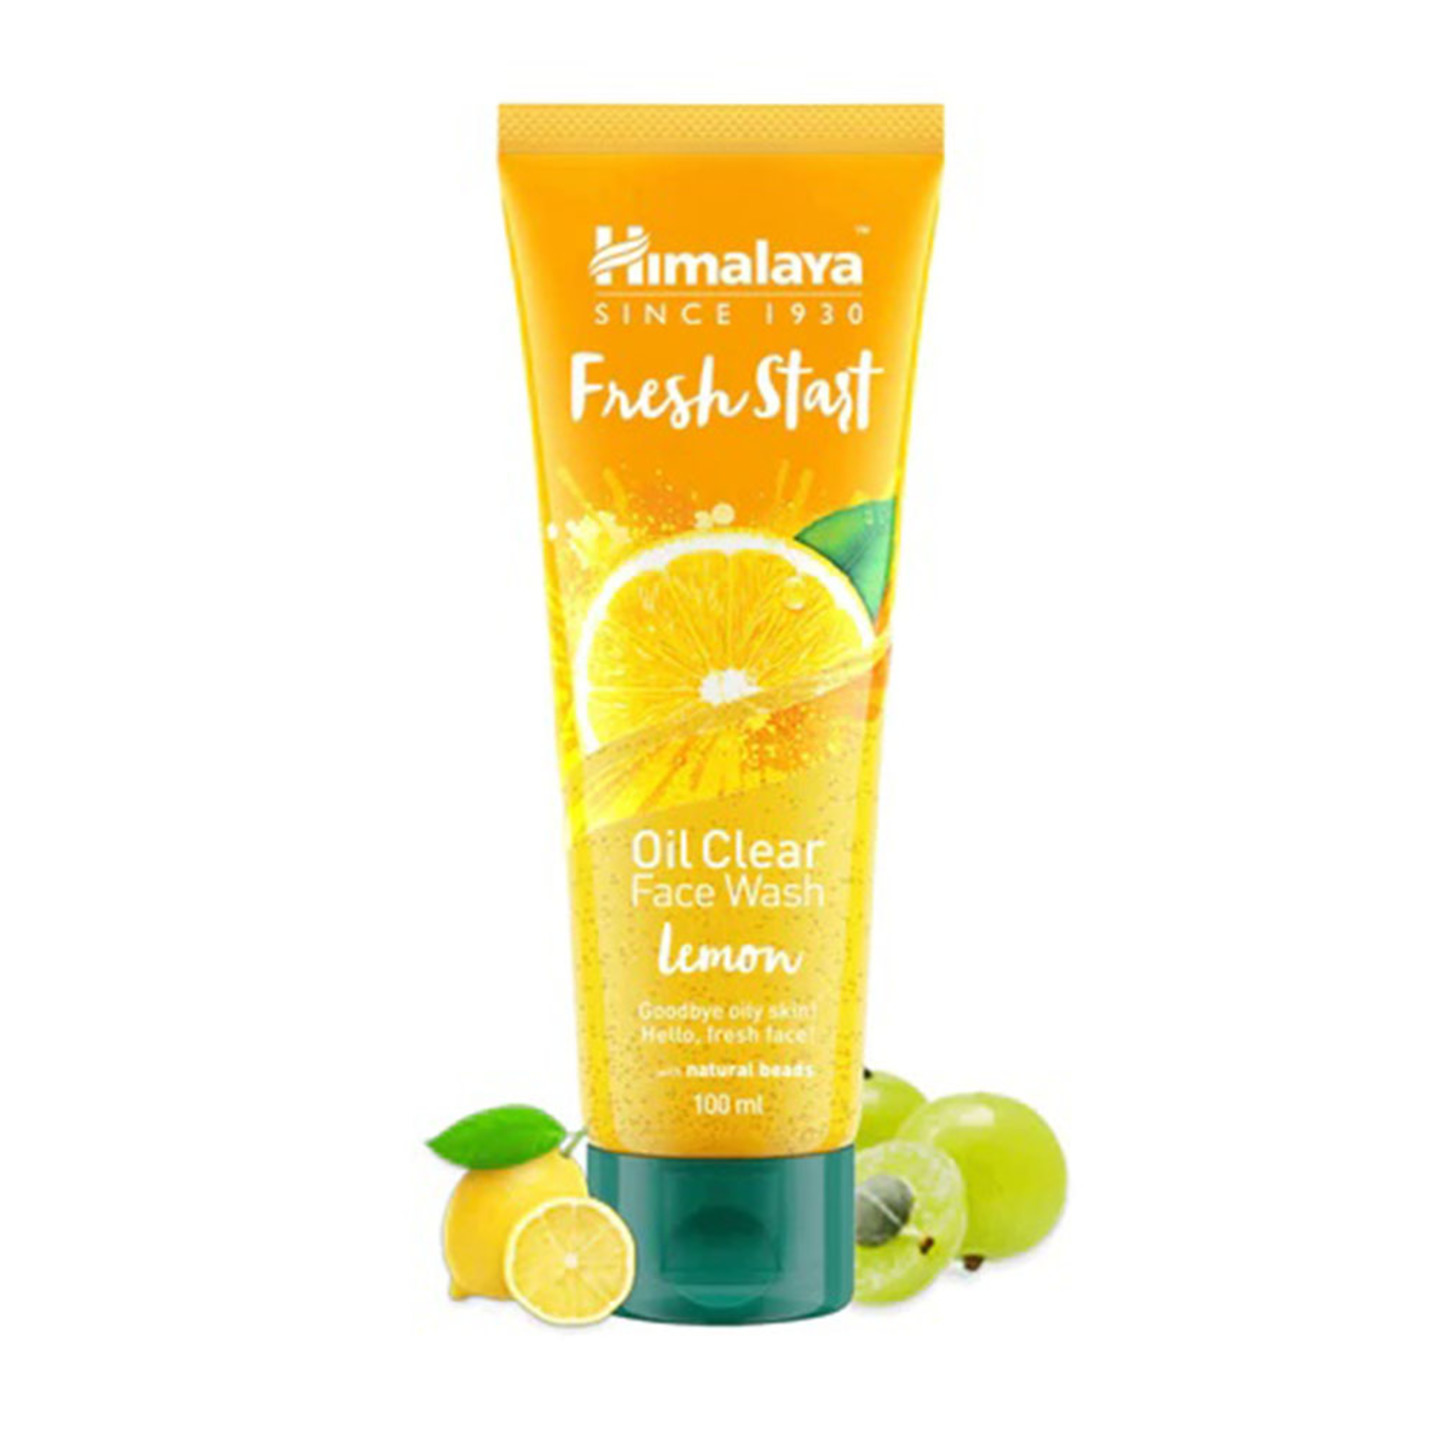 Fresh Start Oil Clear Face Wash Lemon 100ml